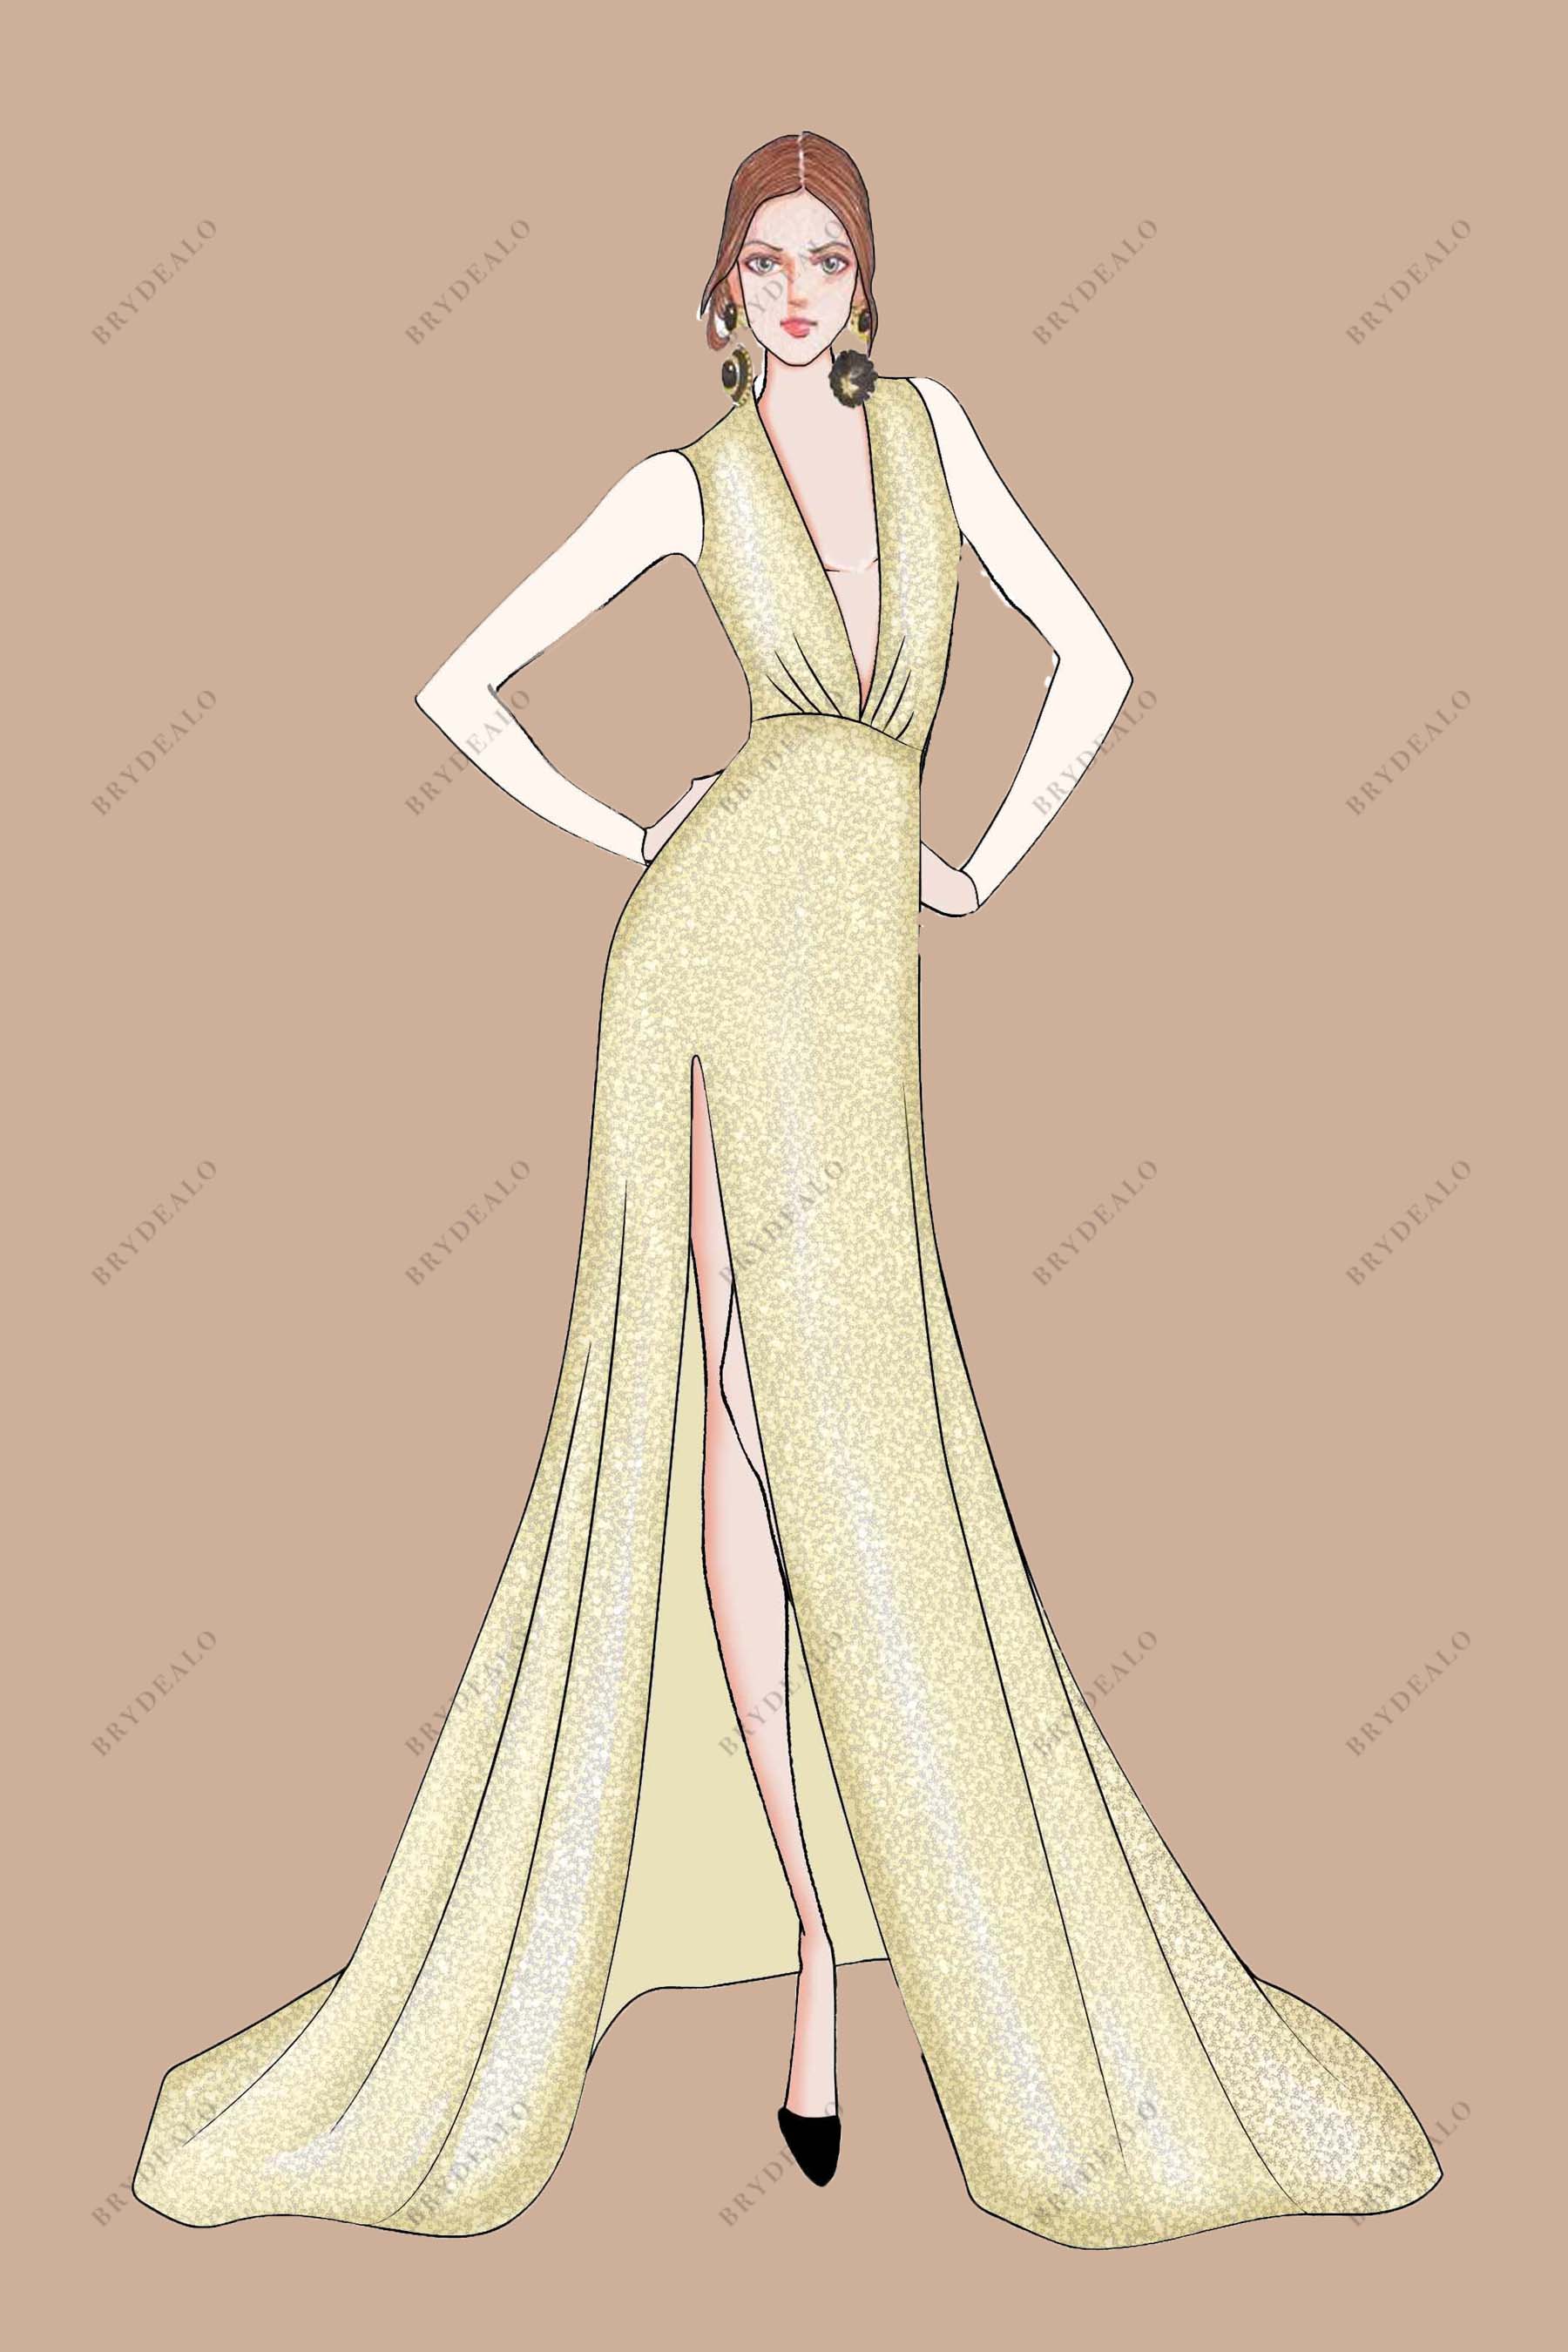 Plunging V-neck Slit Gold Prom Dress Sketch